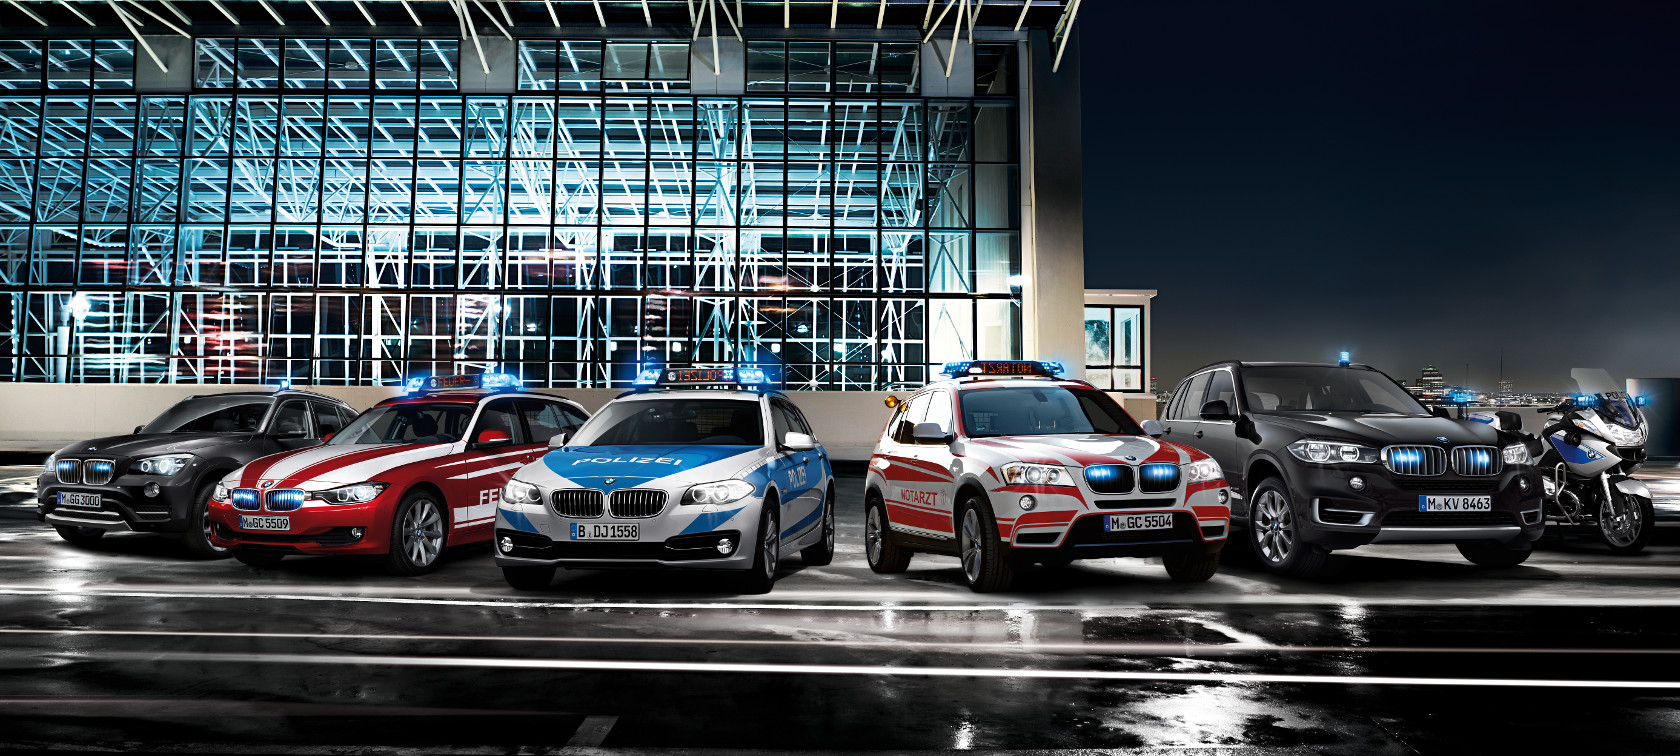  BMW Authority Vehicles